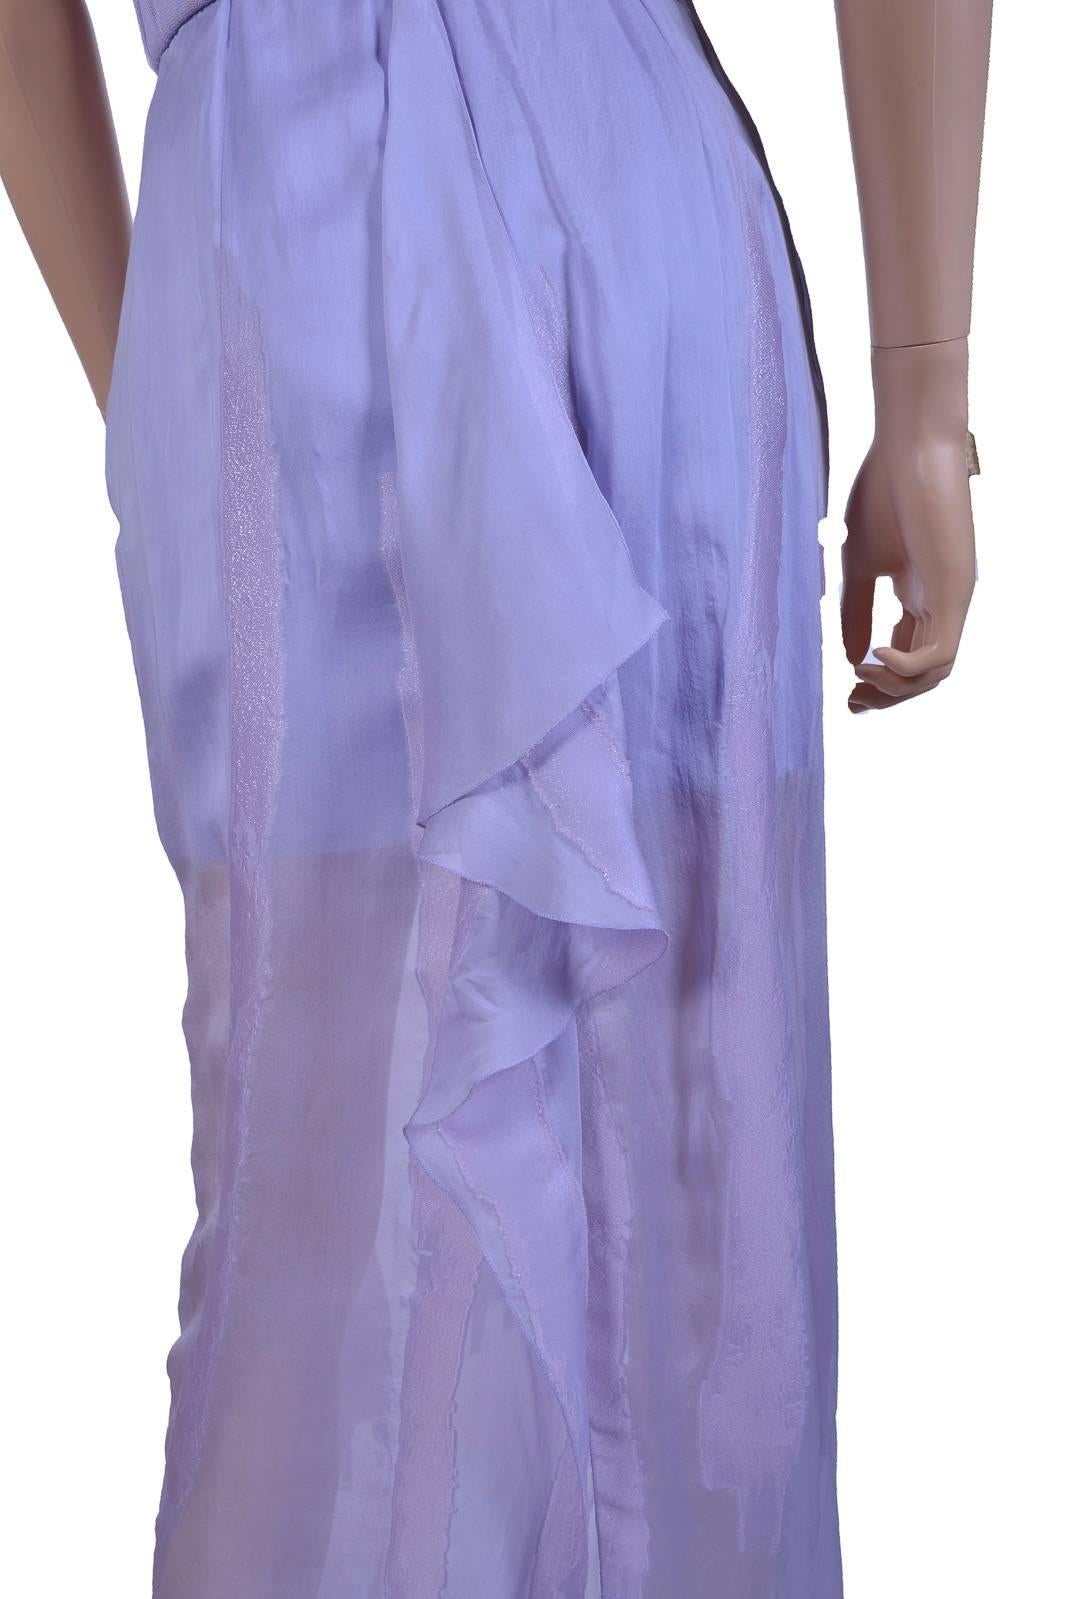 New VERSACE Lilac Chiffon Long Dress 38 3